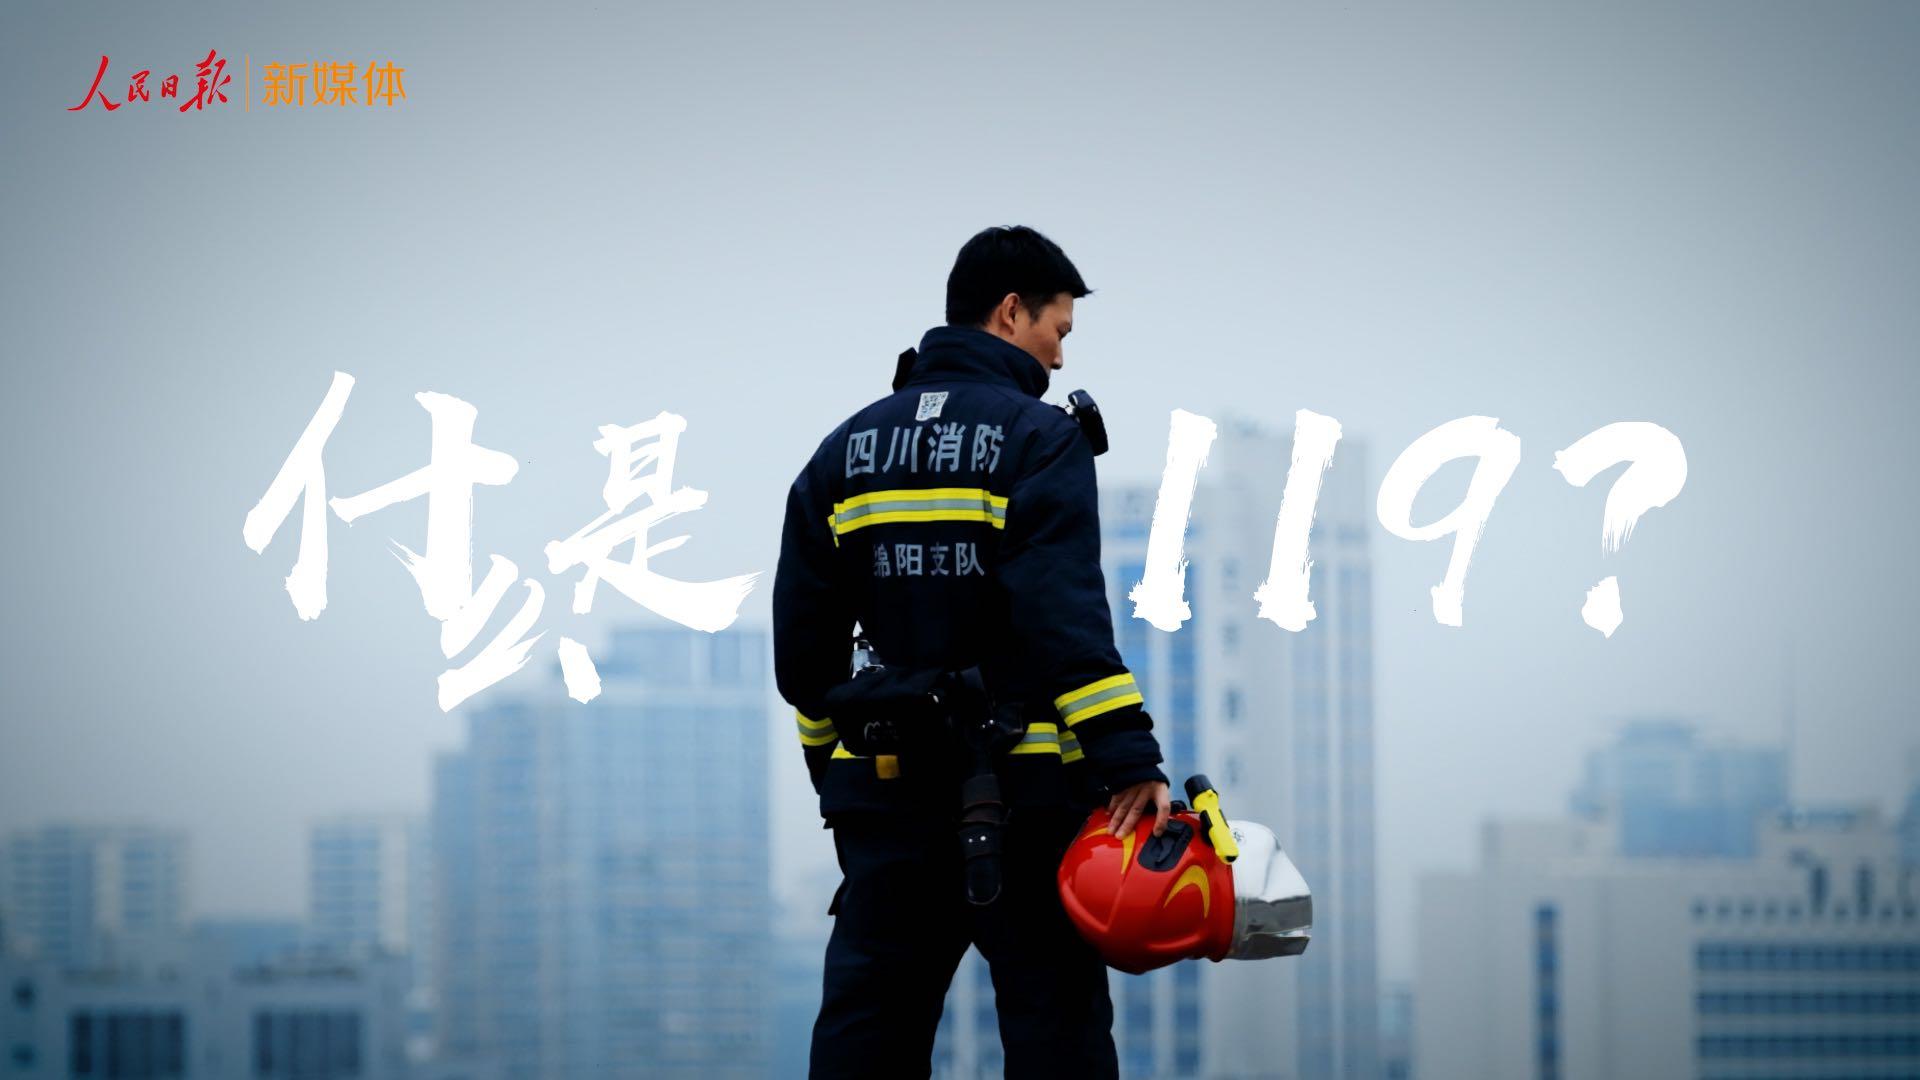 【人民日报】2021中国消防宣传片《什么是119 》